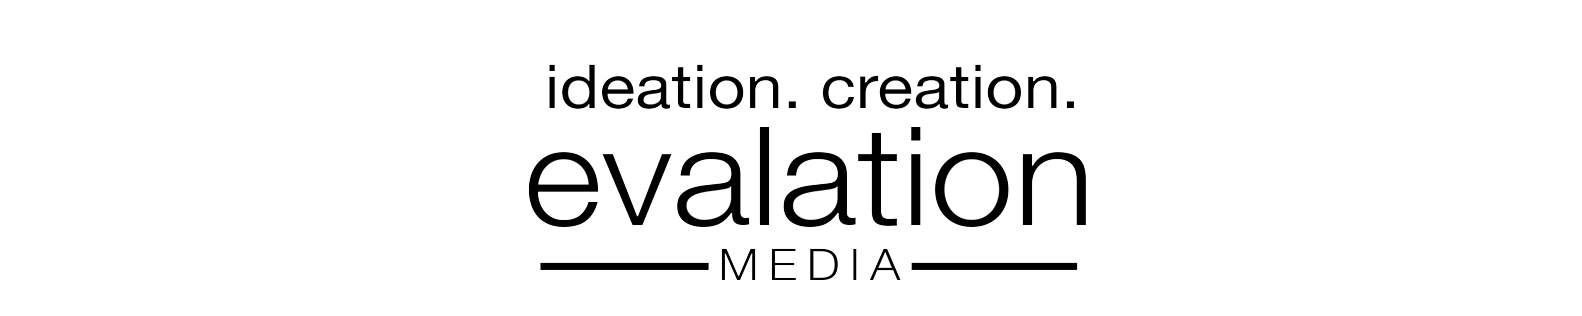 Evalation Media Logo